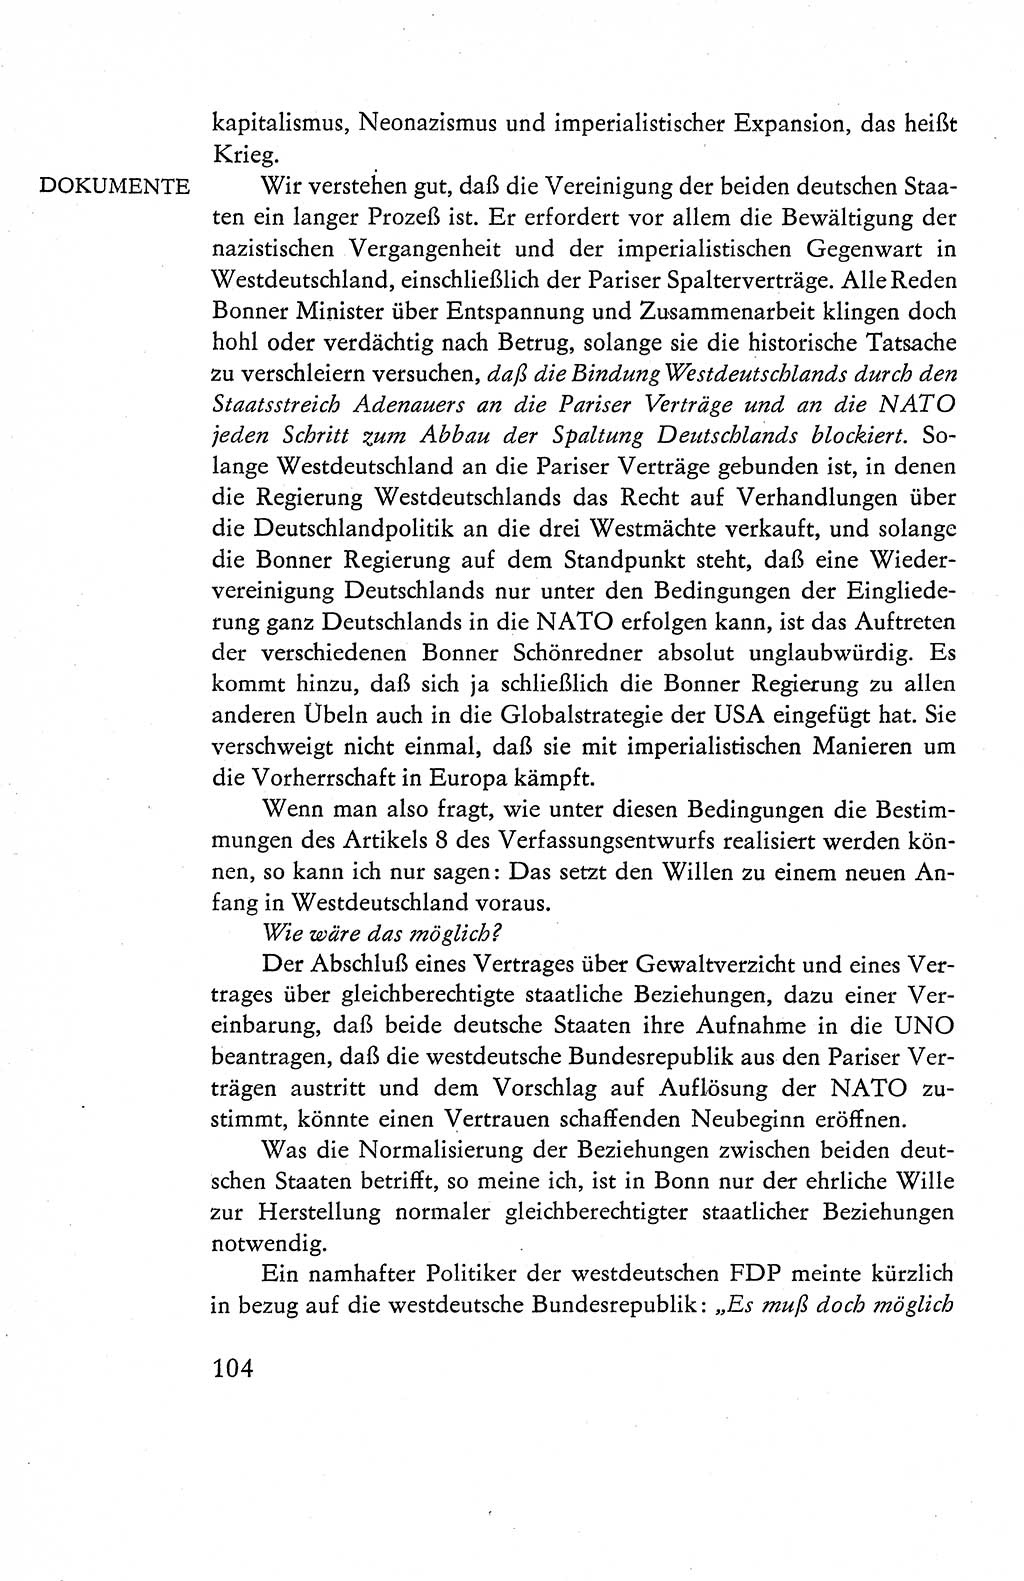 Verfassung der Deutschen Demokratischen Republik (DDR), Dokumente, Kommentar 1969, Band 1, Seite 104 (Verf. DDR Dok. Komm. 1969, Bd. 1, S. 104)